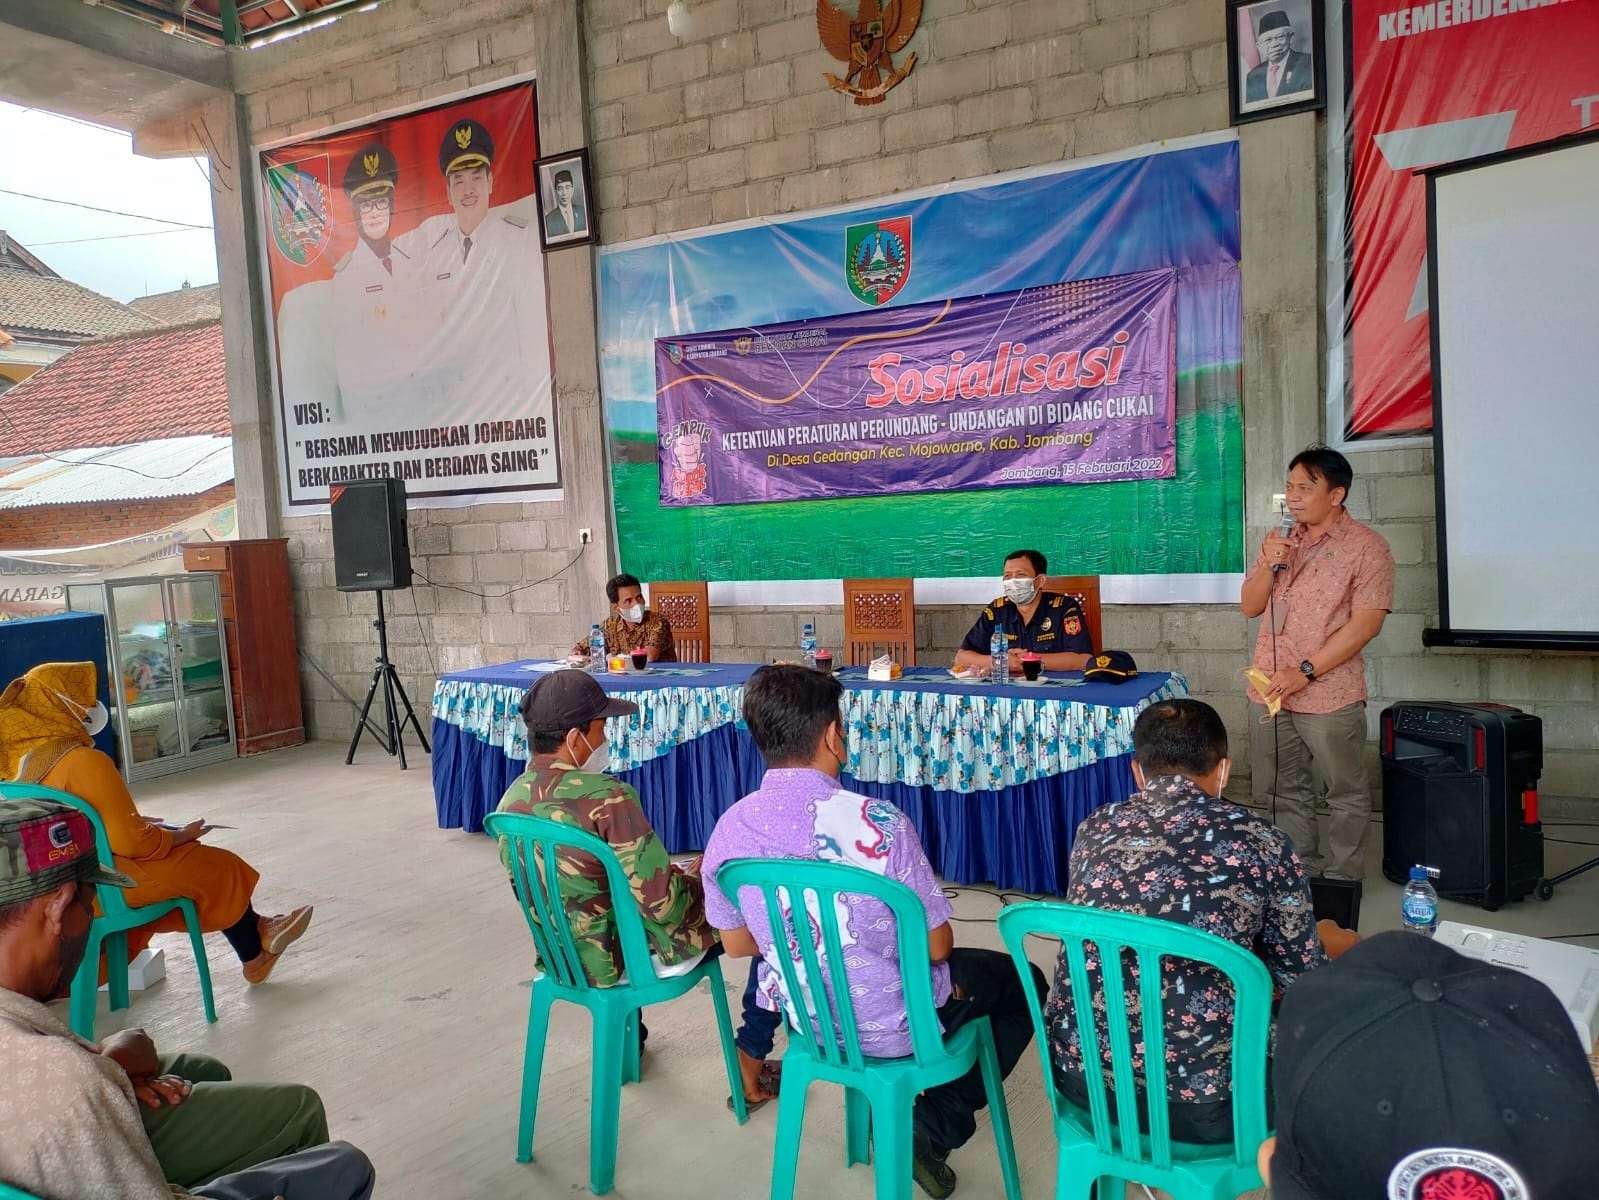 Sosialisasi Peraturan Perundang-undangan Bidang Cukai di Balai Desa Gedangan, Kecamatan Mojowarno, Selasa 15 Februari 2022. (Foto: Istimewa)